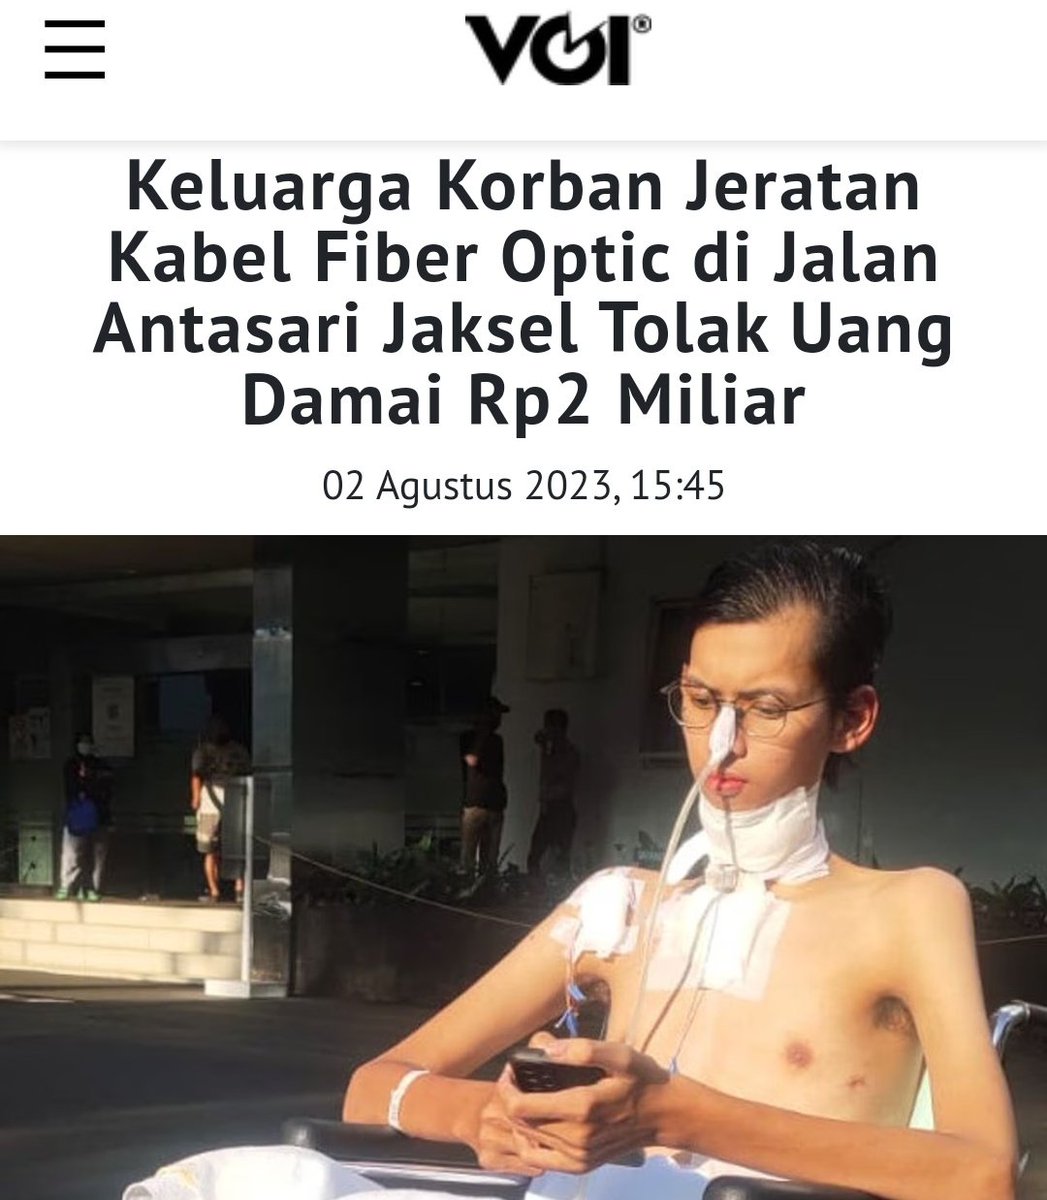 Sultan Rifat Alfatih korban kabel fiber optic mengaku setelah kasusnya viral, mereka ditawari uang damai 2 Miliar oleh PT Bali Tower selaku pihak yg bertanggungjawab. Kemungkinan uang itu supaya pihak korban gak terus-terusan memviralkan kasus dan juga agar gak berlanjut ke jalur